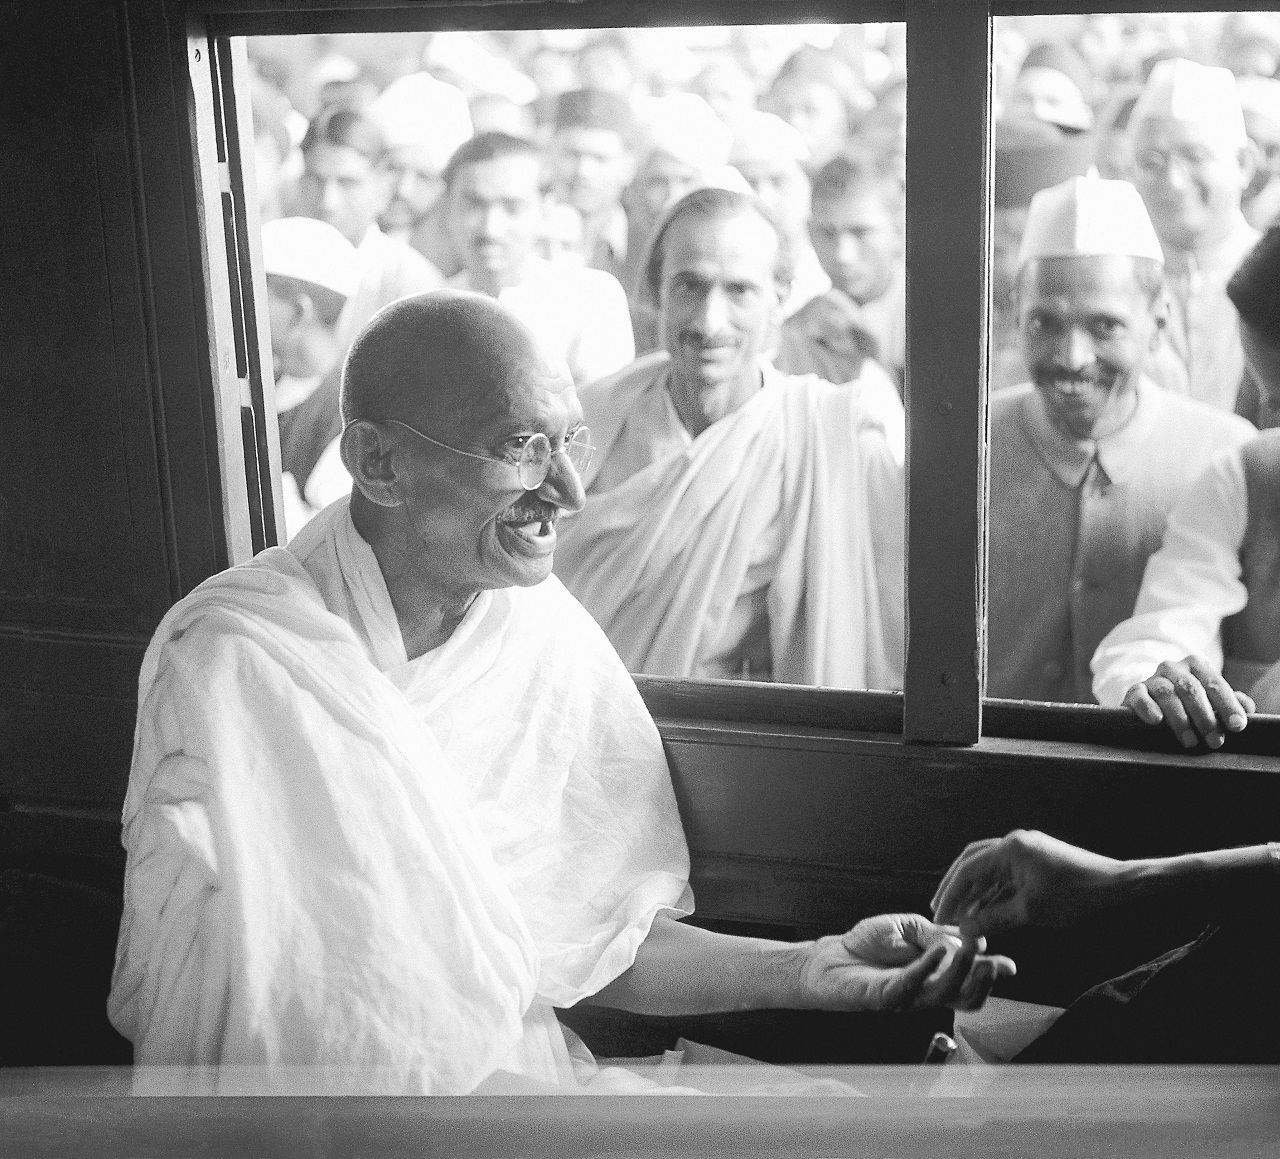 Gandhi moriva 75 anni fa: le sue frasi indimenticabili, per ricordarlo - immagine 2